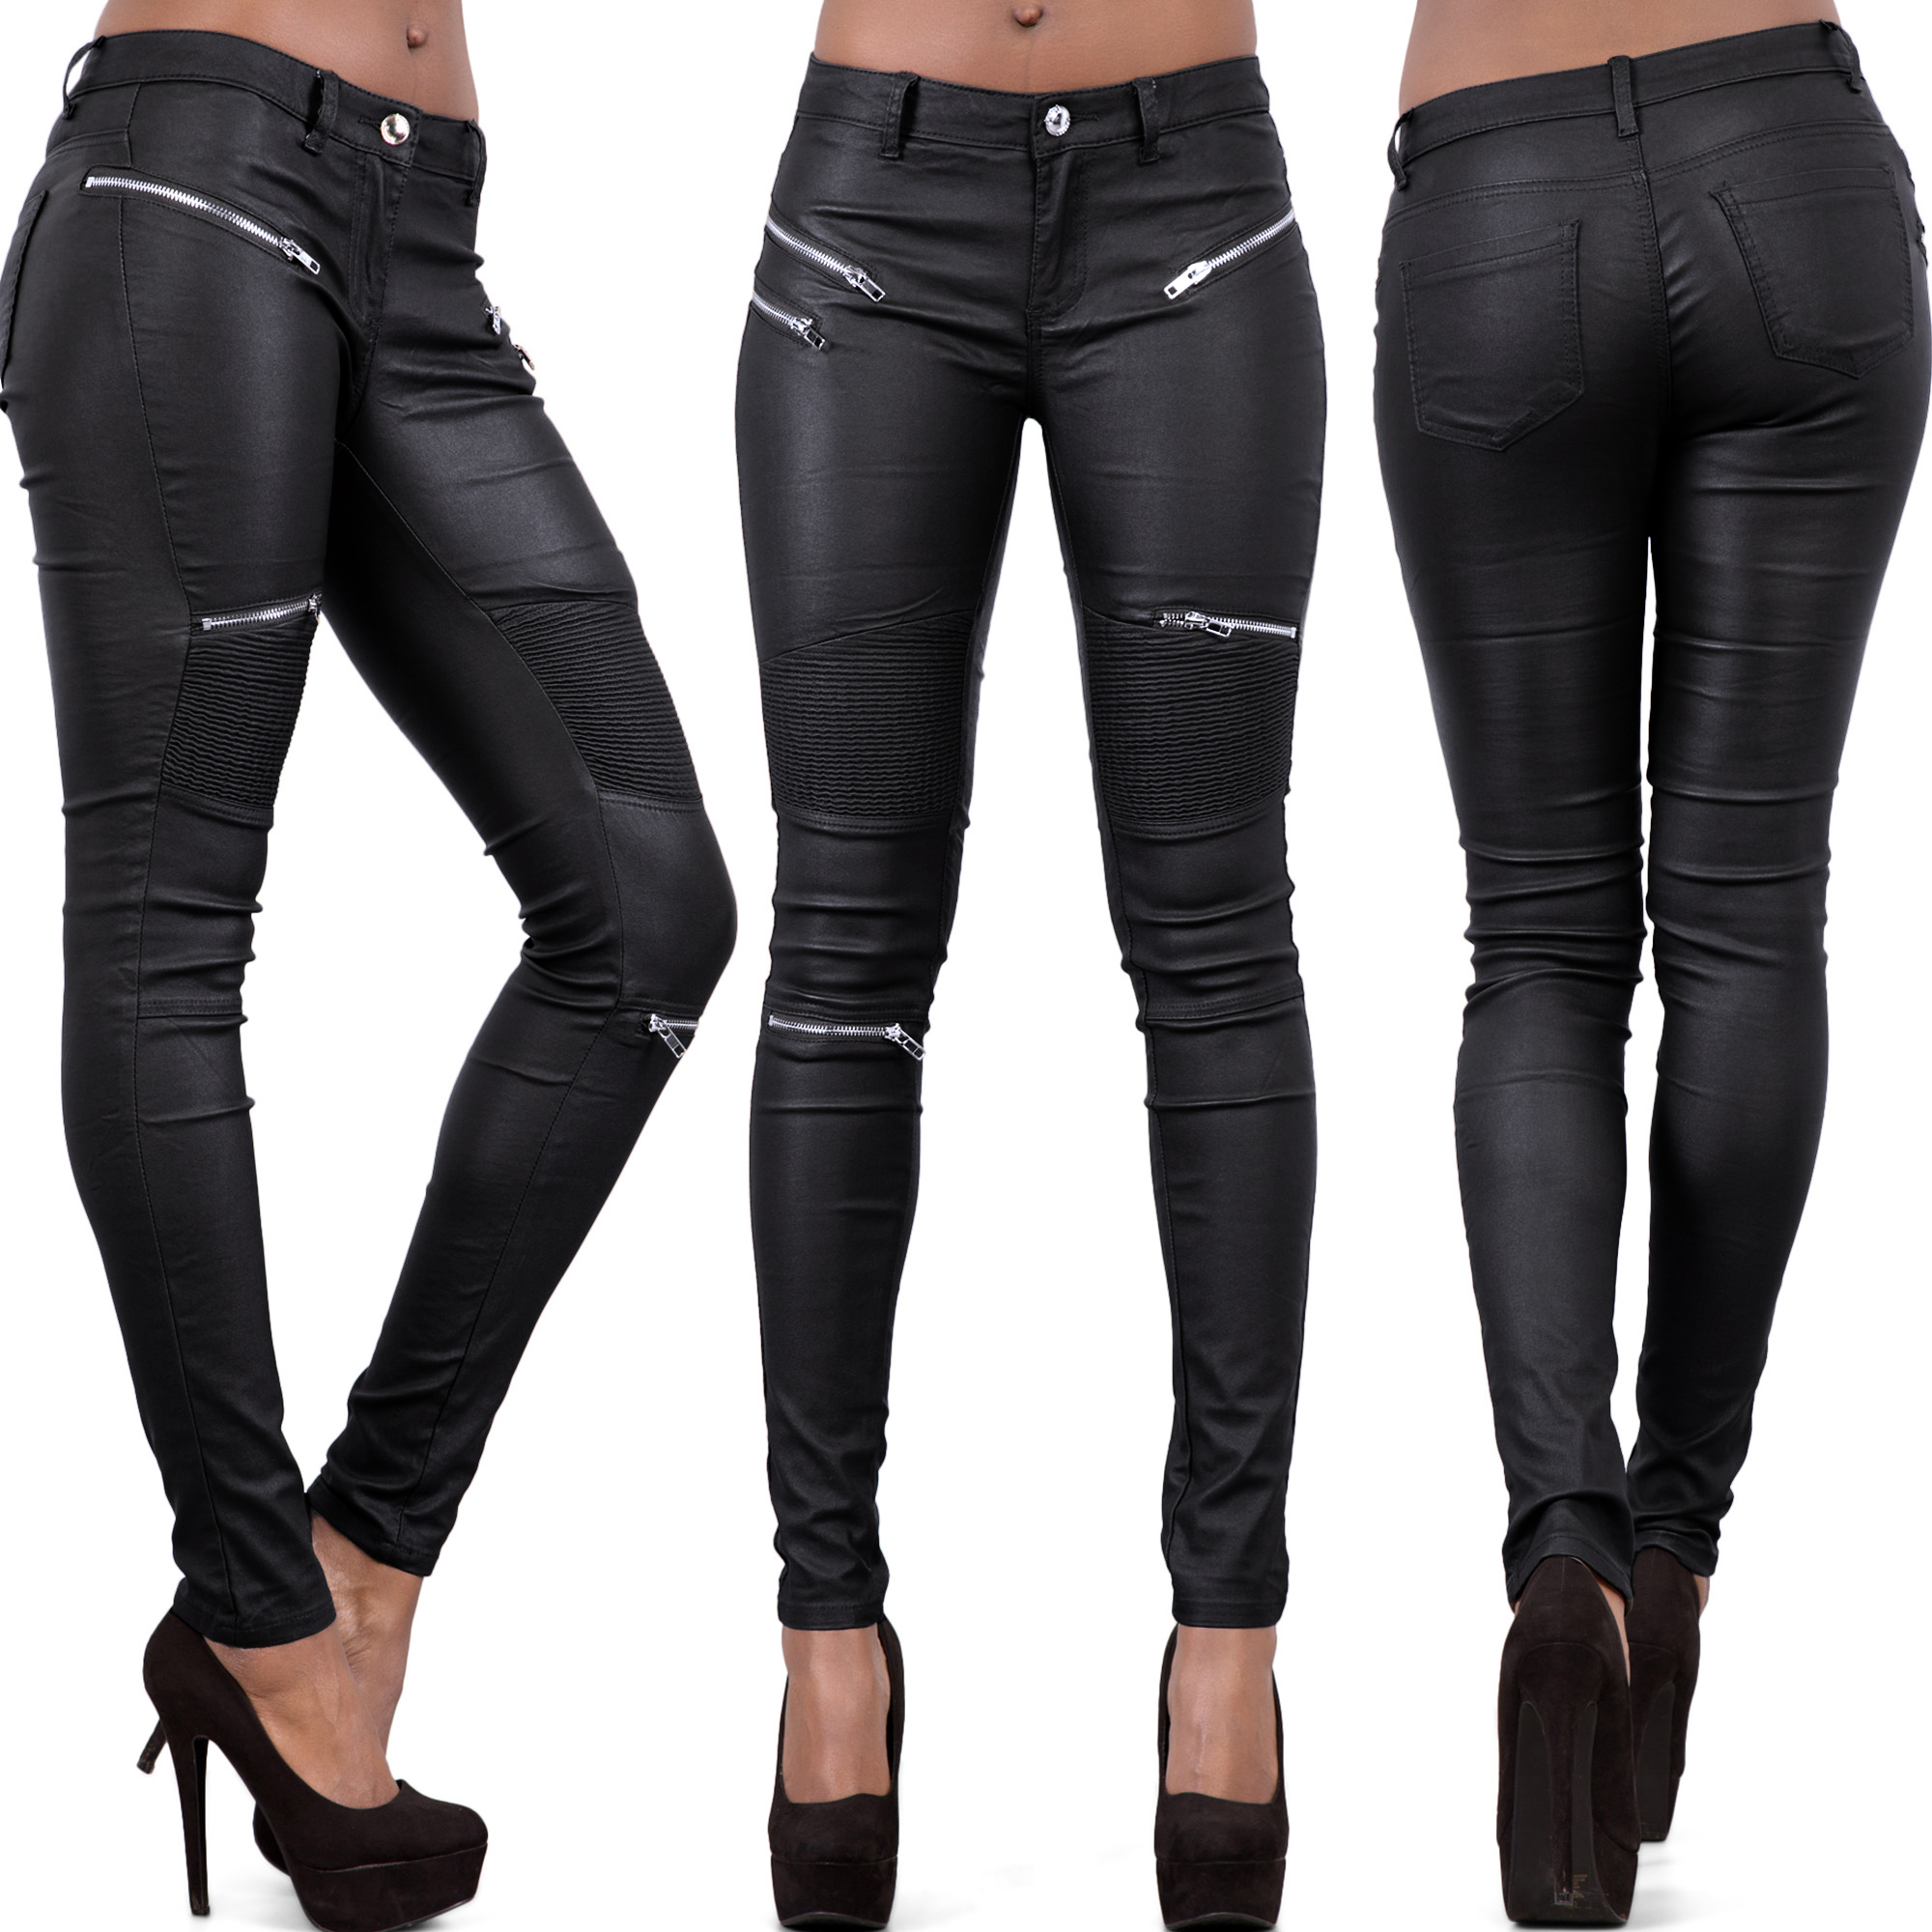 leather biker jeans womens